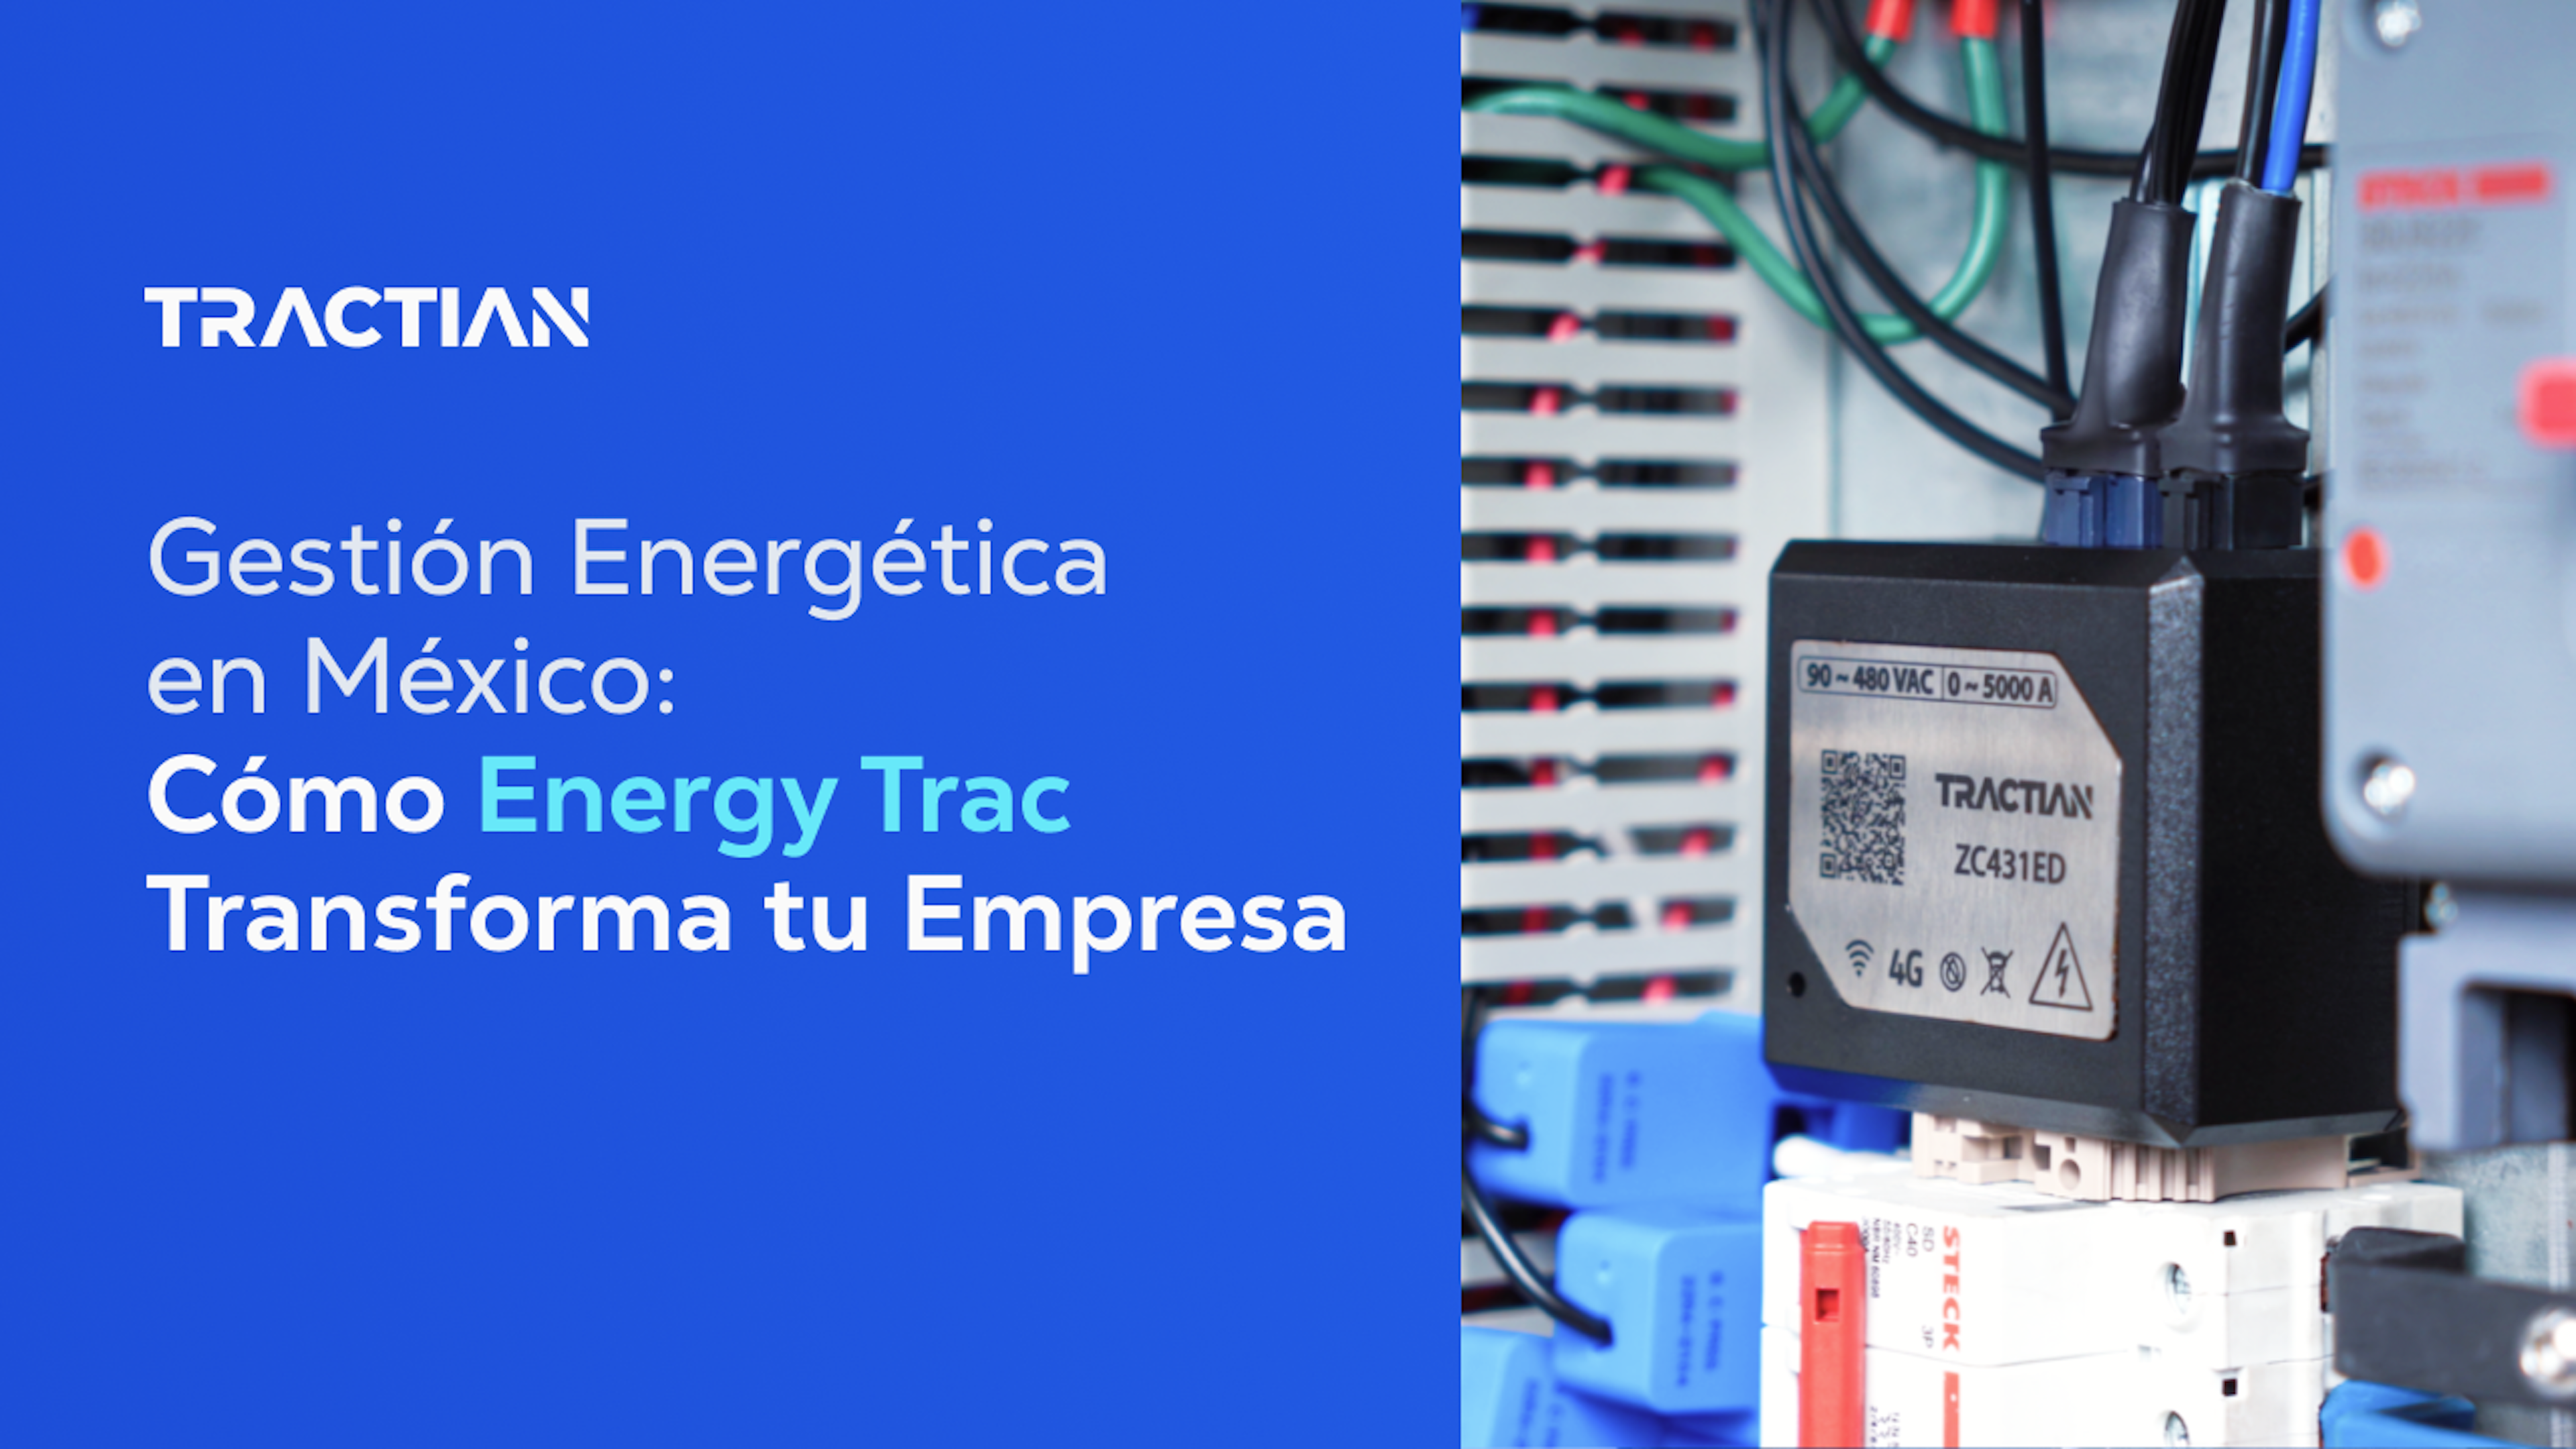 Gestión Energética en México: Cómo Energy Trac Transforma tu Empresa